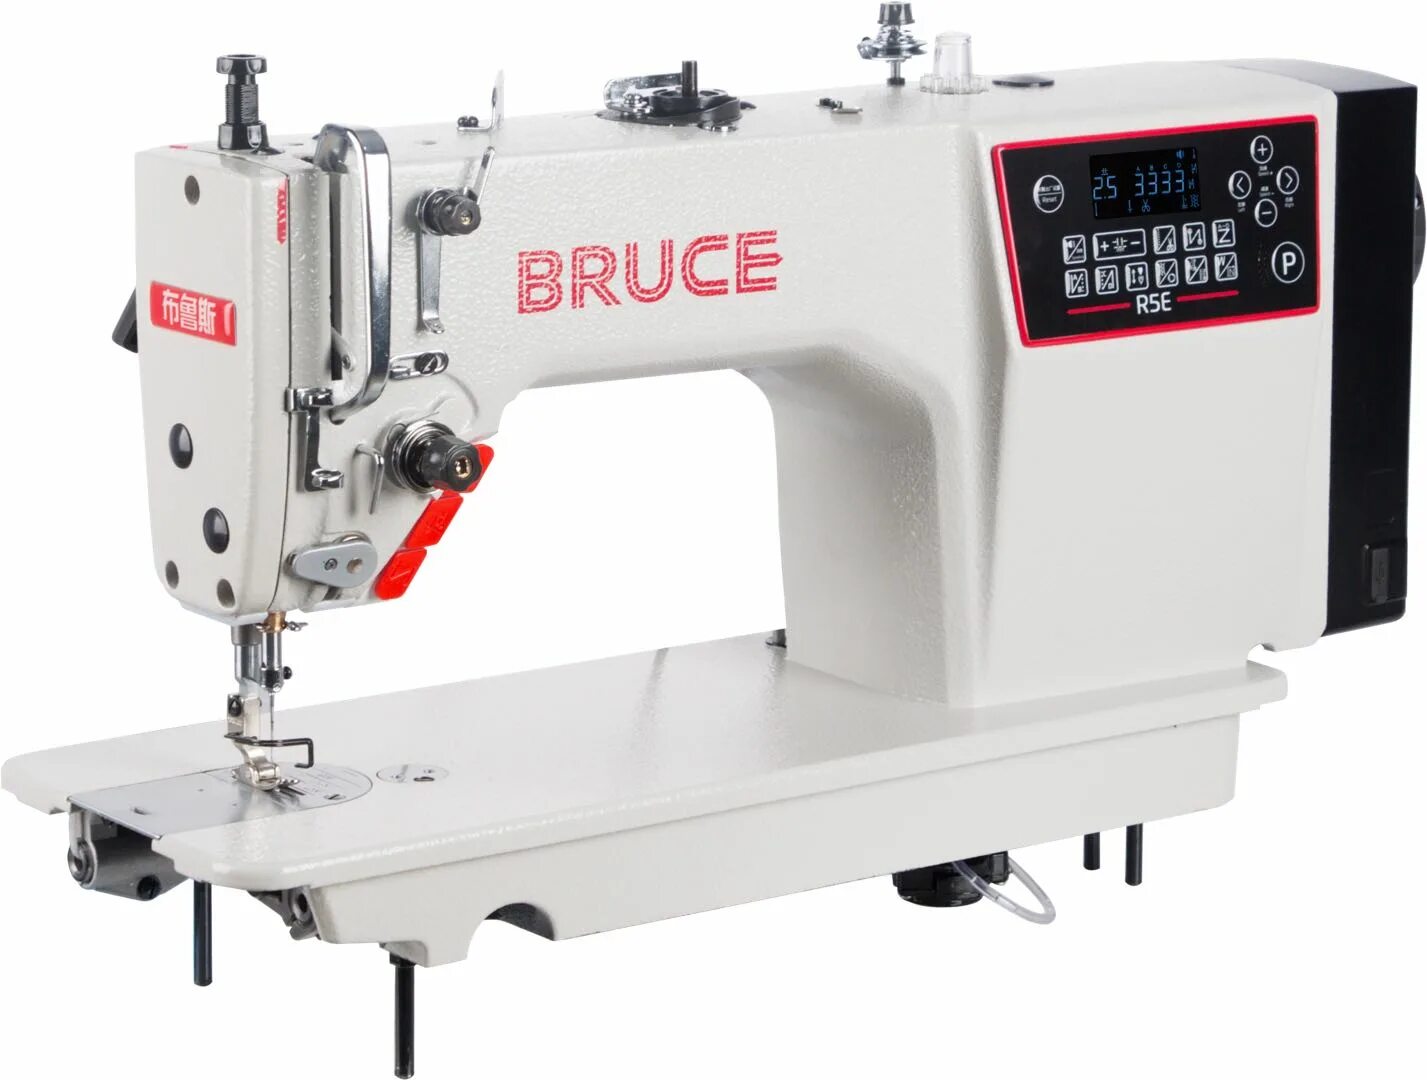 Промышленные прямострочные машинки. Швейная машина Bruce r4200. Компьютеризована прямострочная швейная машина Bruce r5e-q автомат. Bruce швейная машина q5. Промышленные машинки Bruce q5.